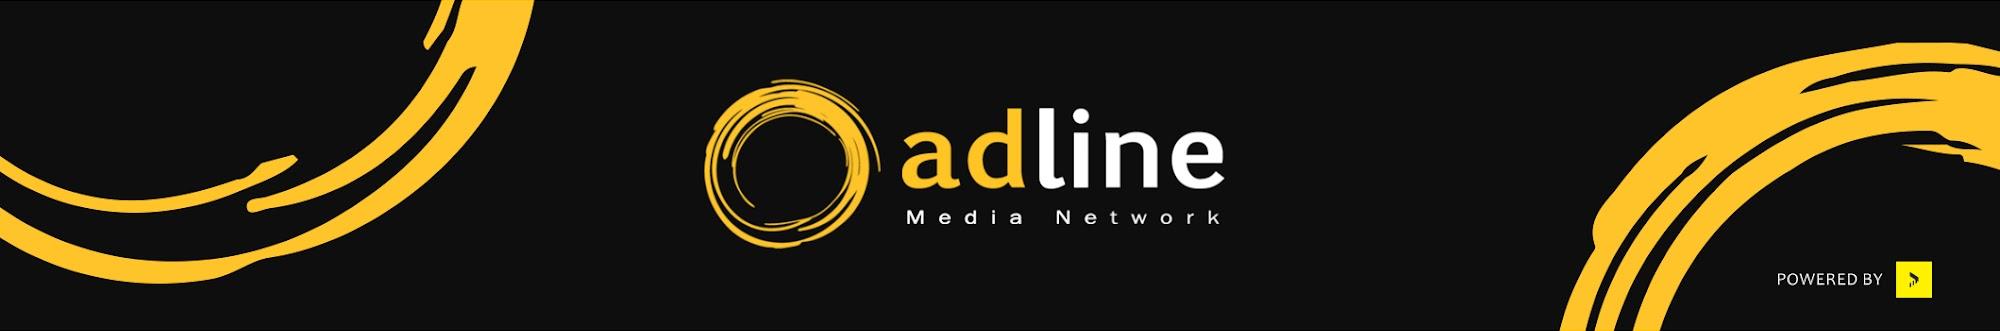 adline Media Network